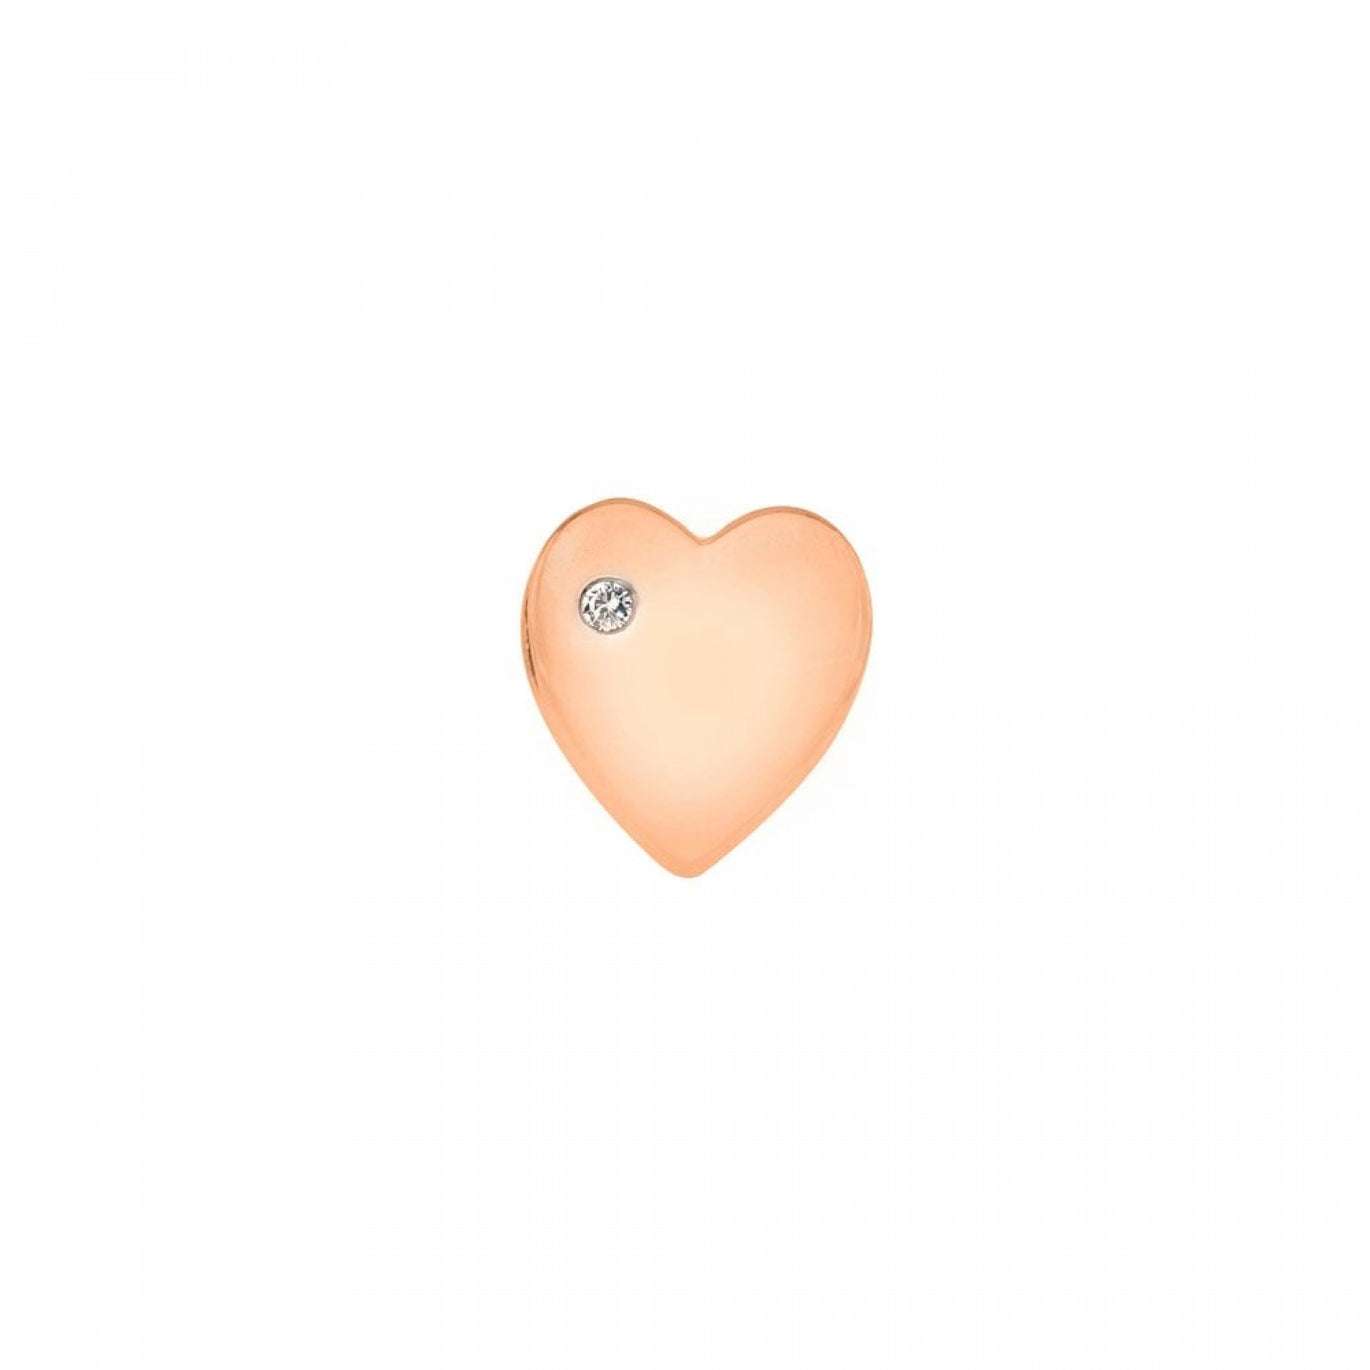 Storyteller Heart Icon Pendant - Rose Gold Plated